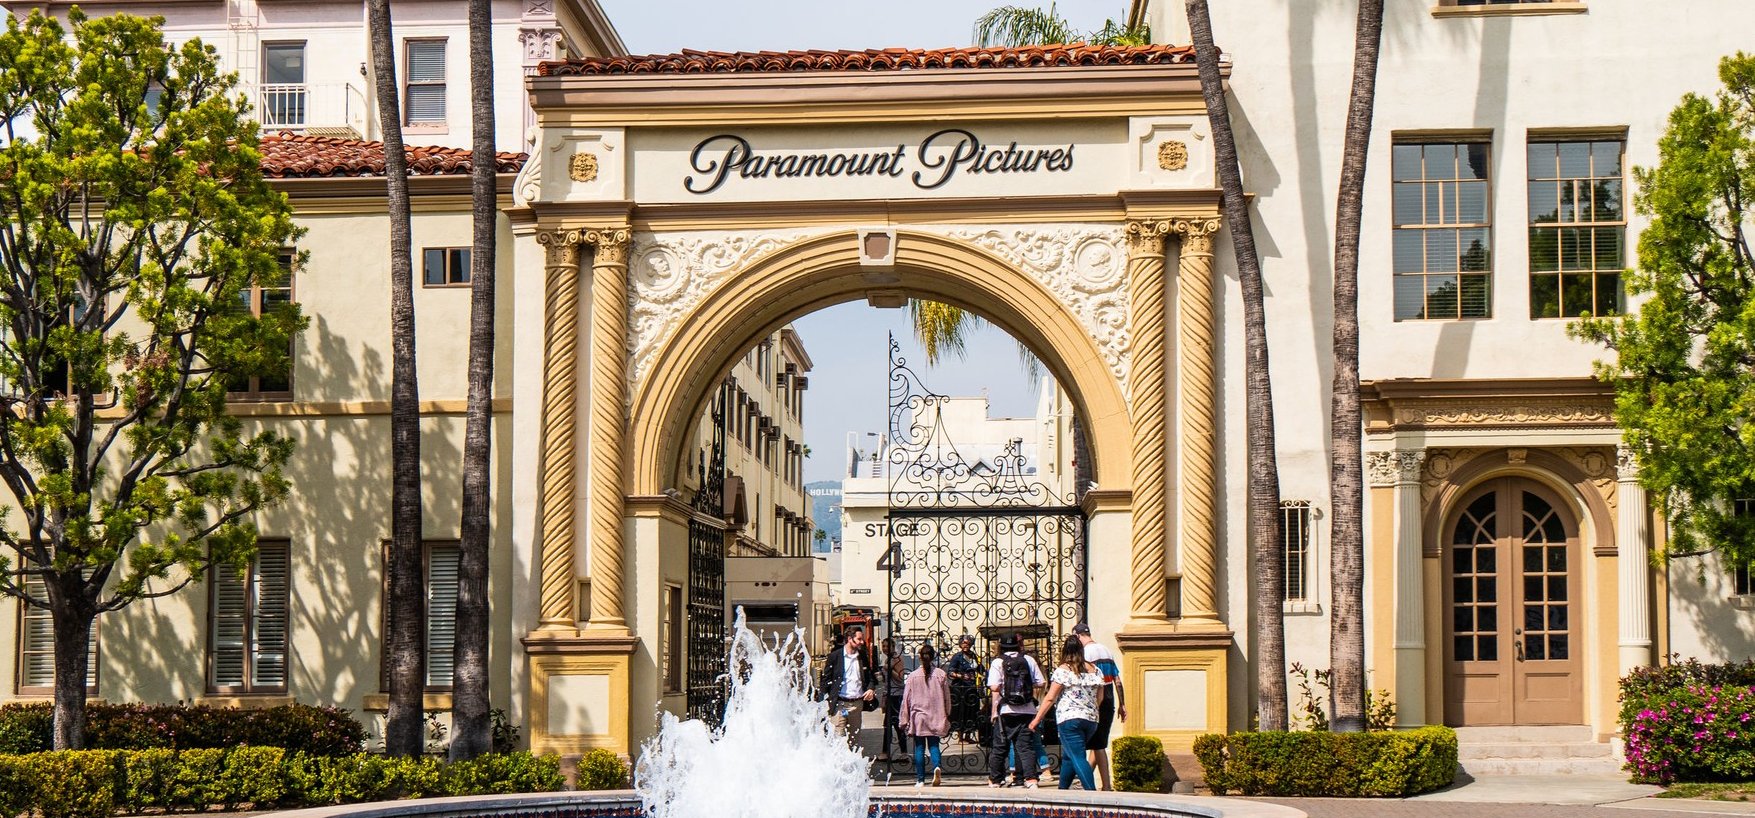 Hollywoodot egykor magyarok uralták: Zukor Adolf ma 109 éve alapította a Paramount Picturest